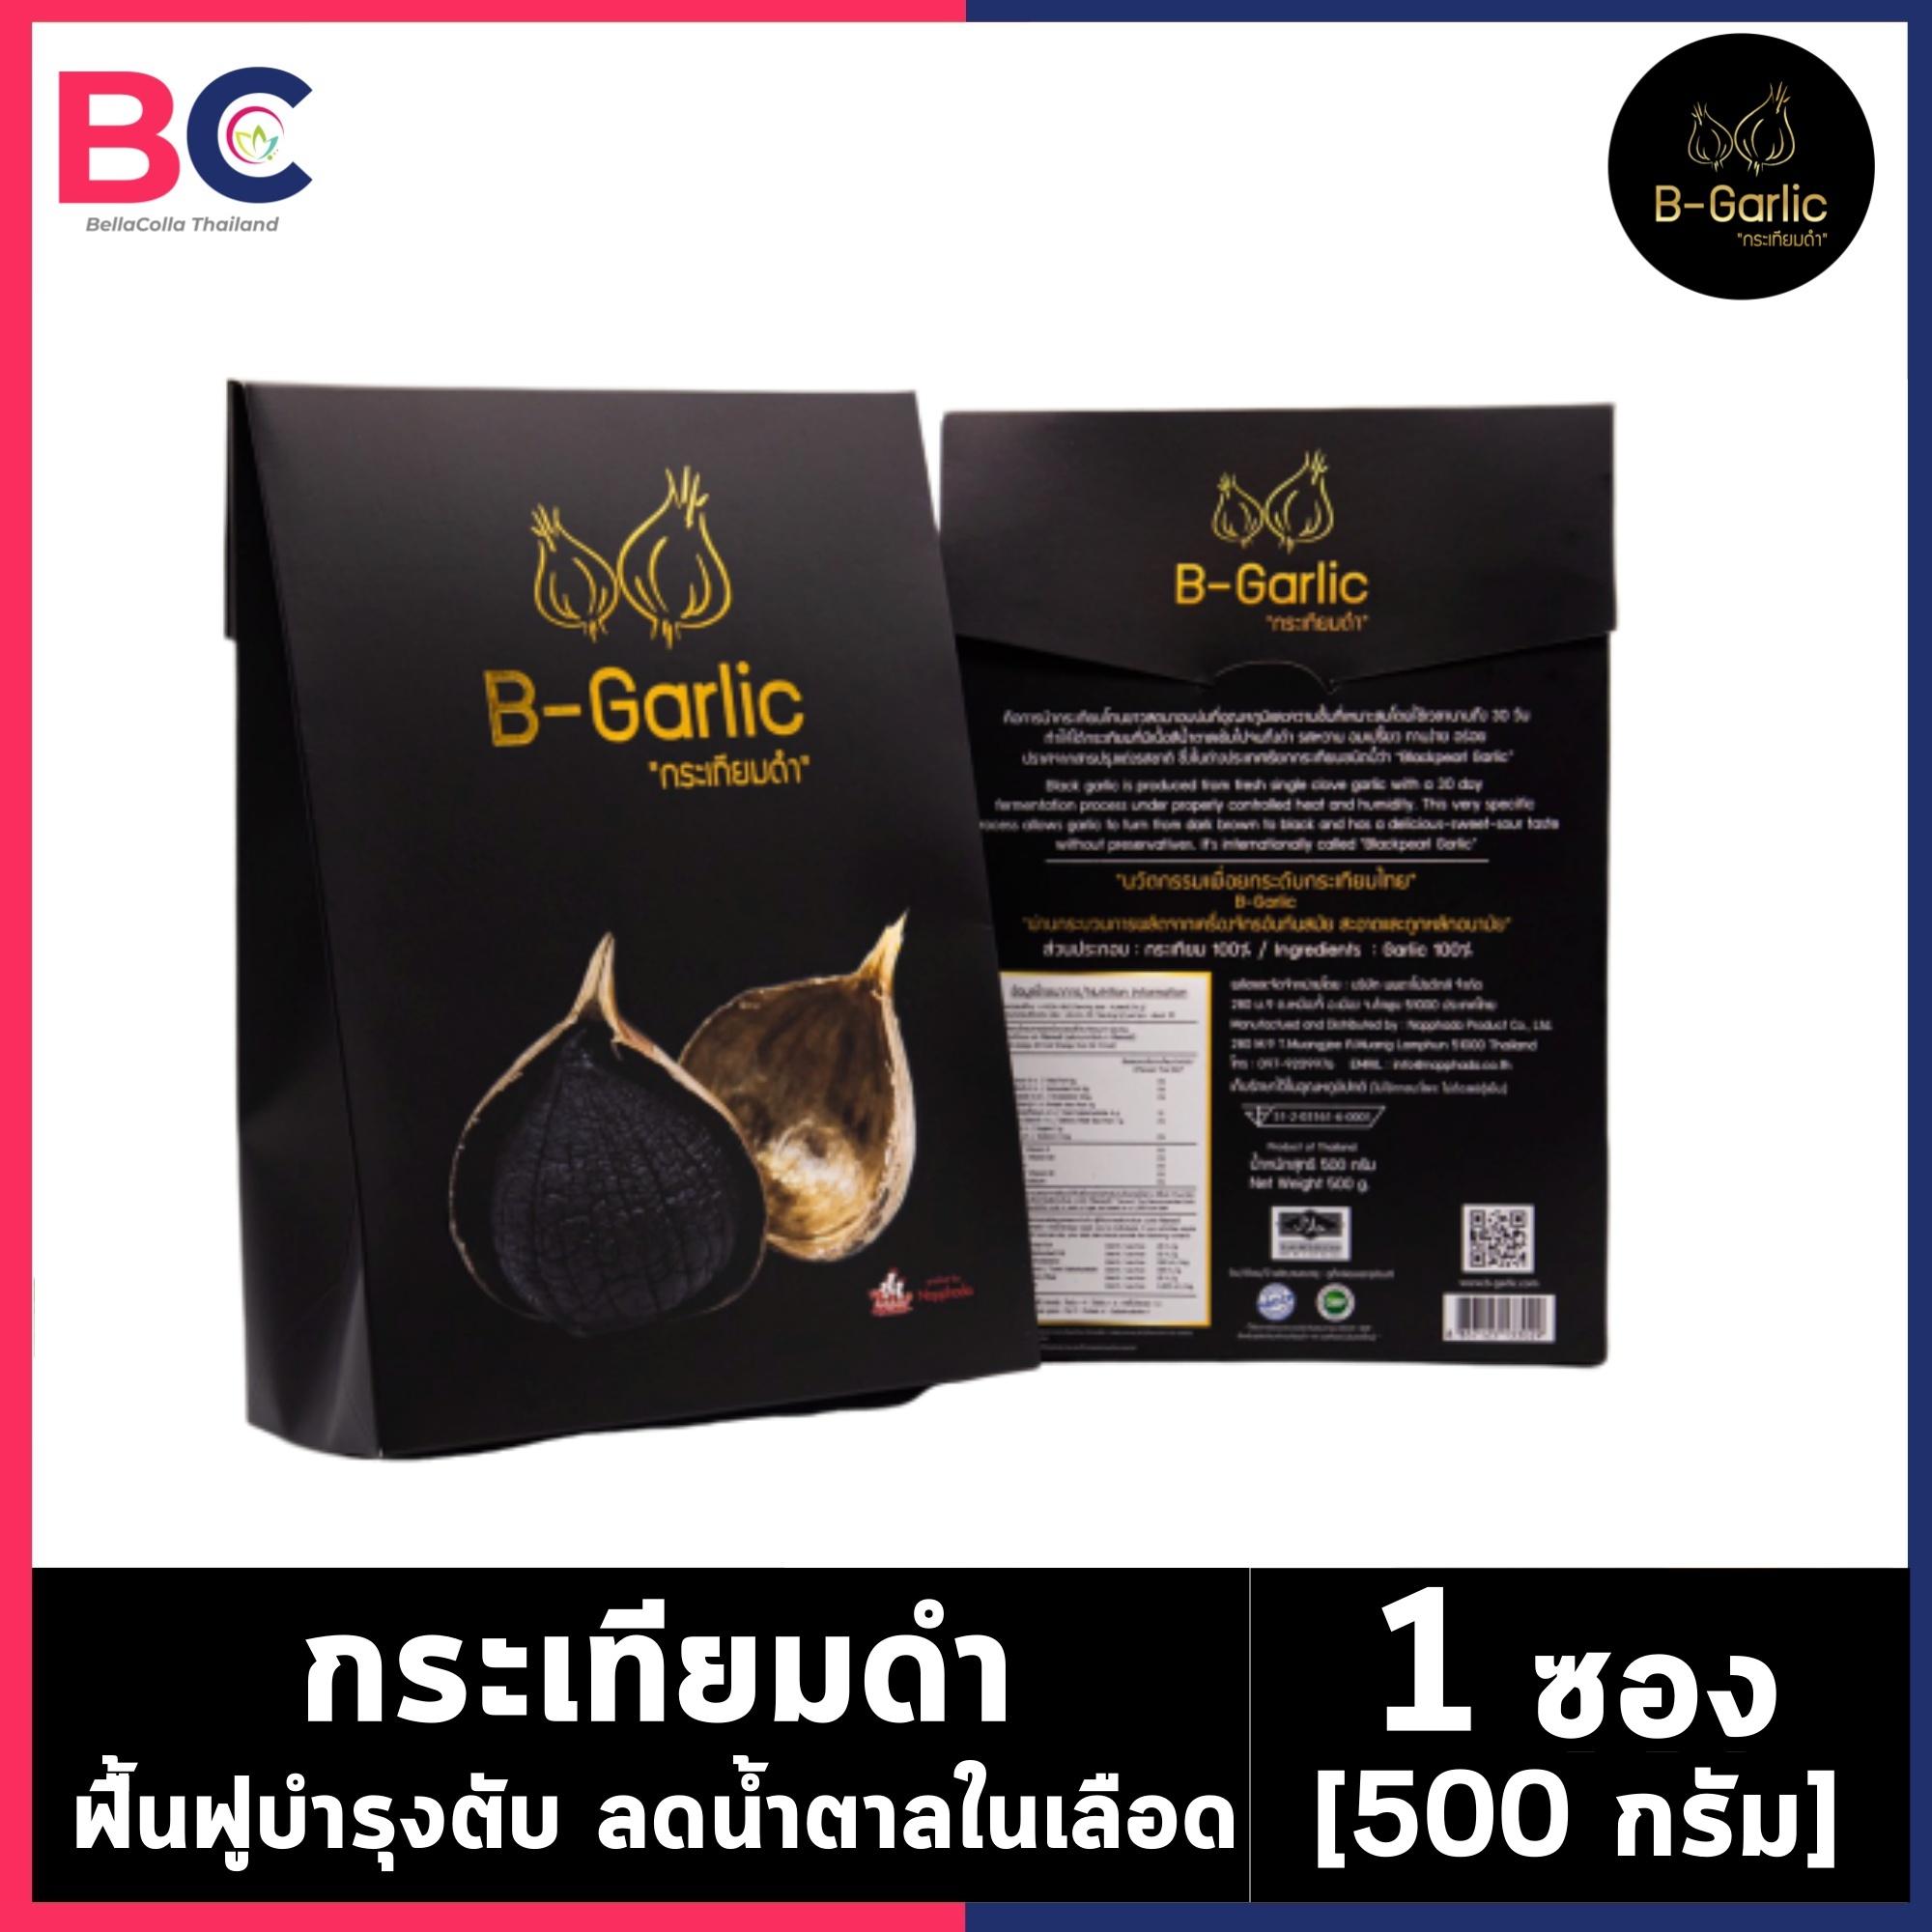 กระเทียมดำ B-Garlic [500 กรัม] [1 ซอง] บำรุงตับ น้ำตาลในเลือด ลดไขมันในเลือด นอนไม่หลับ บำรุงร่างกาย by BellaColla Thailand